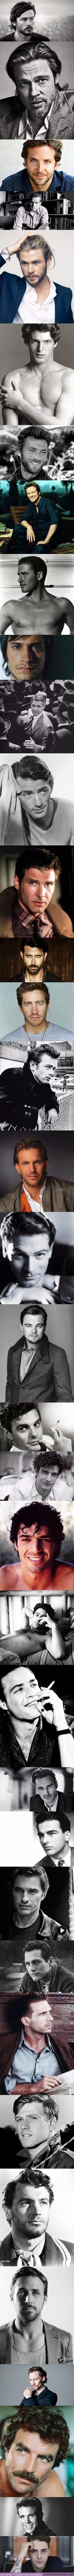 10492 - Los 36 actores de cine más guapos de la historia